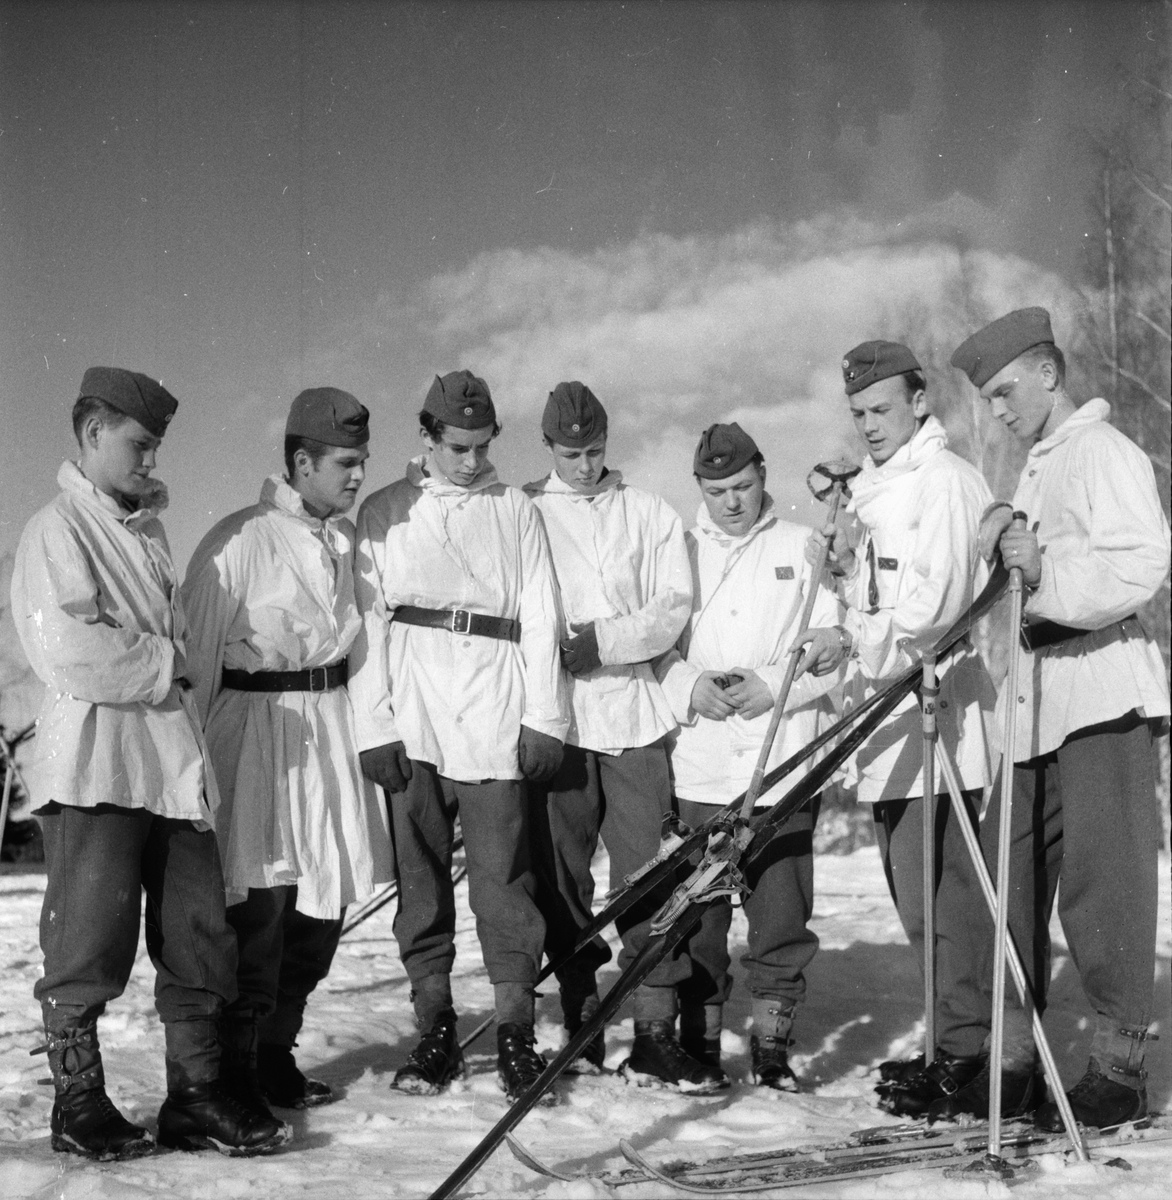 FBU-läger Stagården
Februari 1959